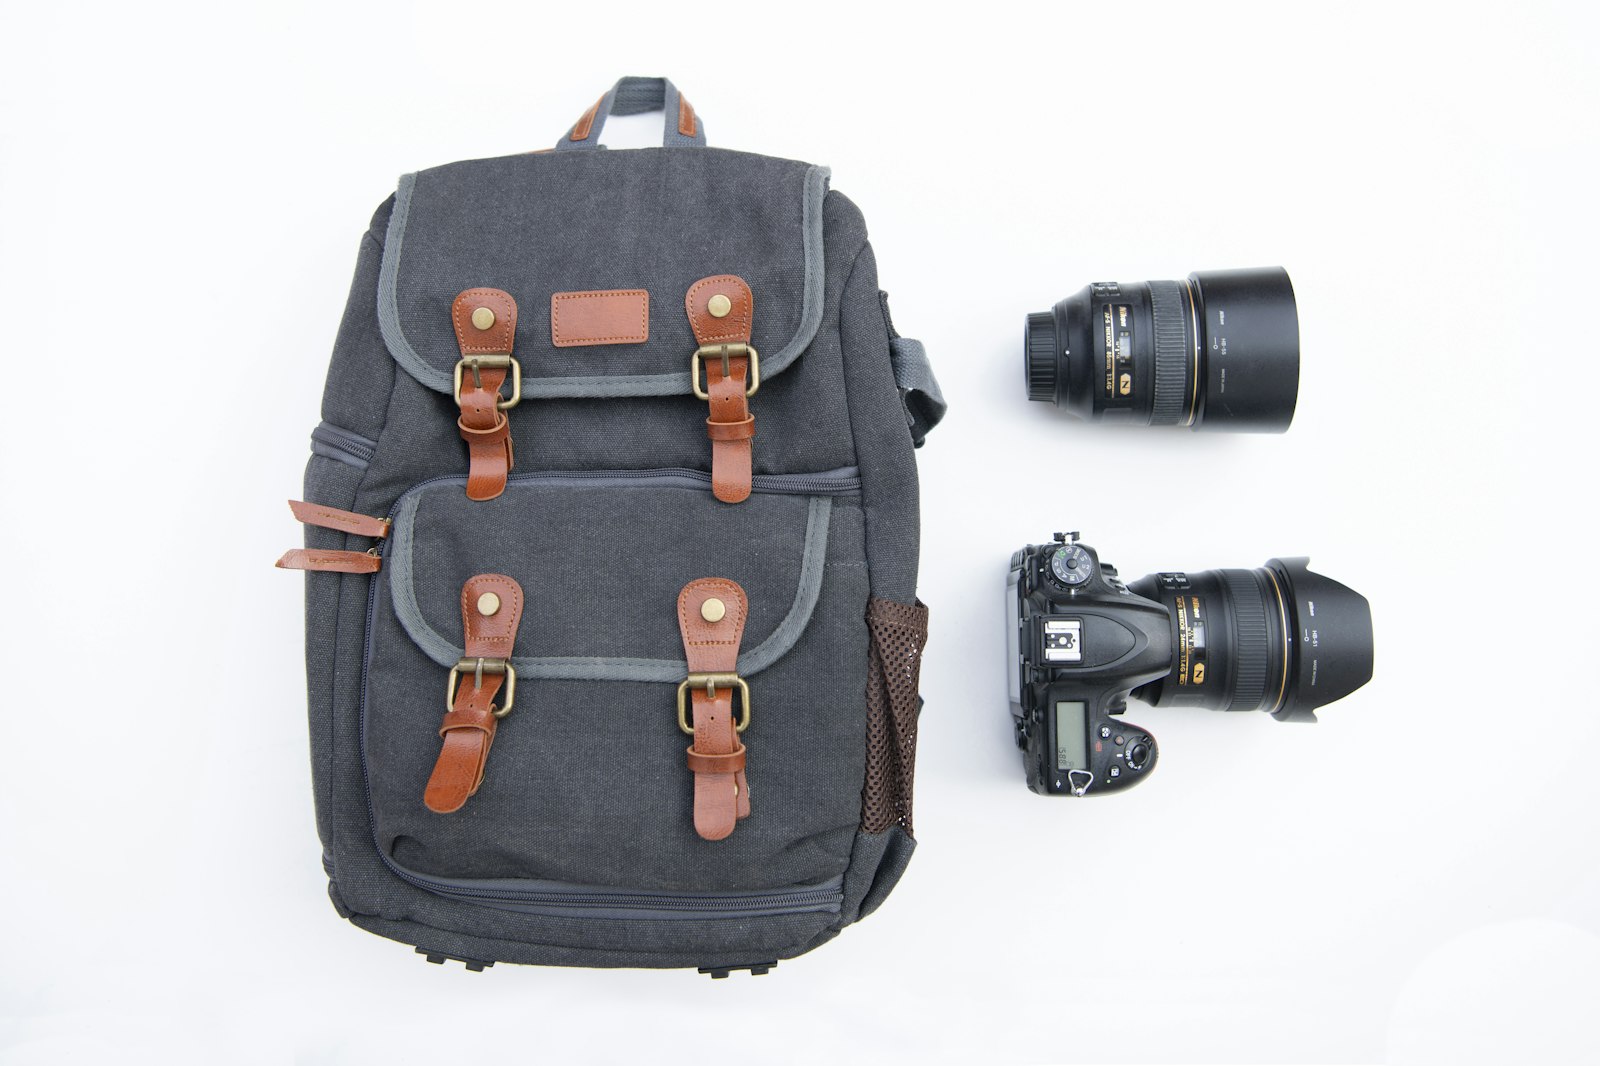 Nikon D850 + Nikon AF-S Nikkor 24-70mm F2.8E ED VR sample photo. Gray and black backpack photography